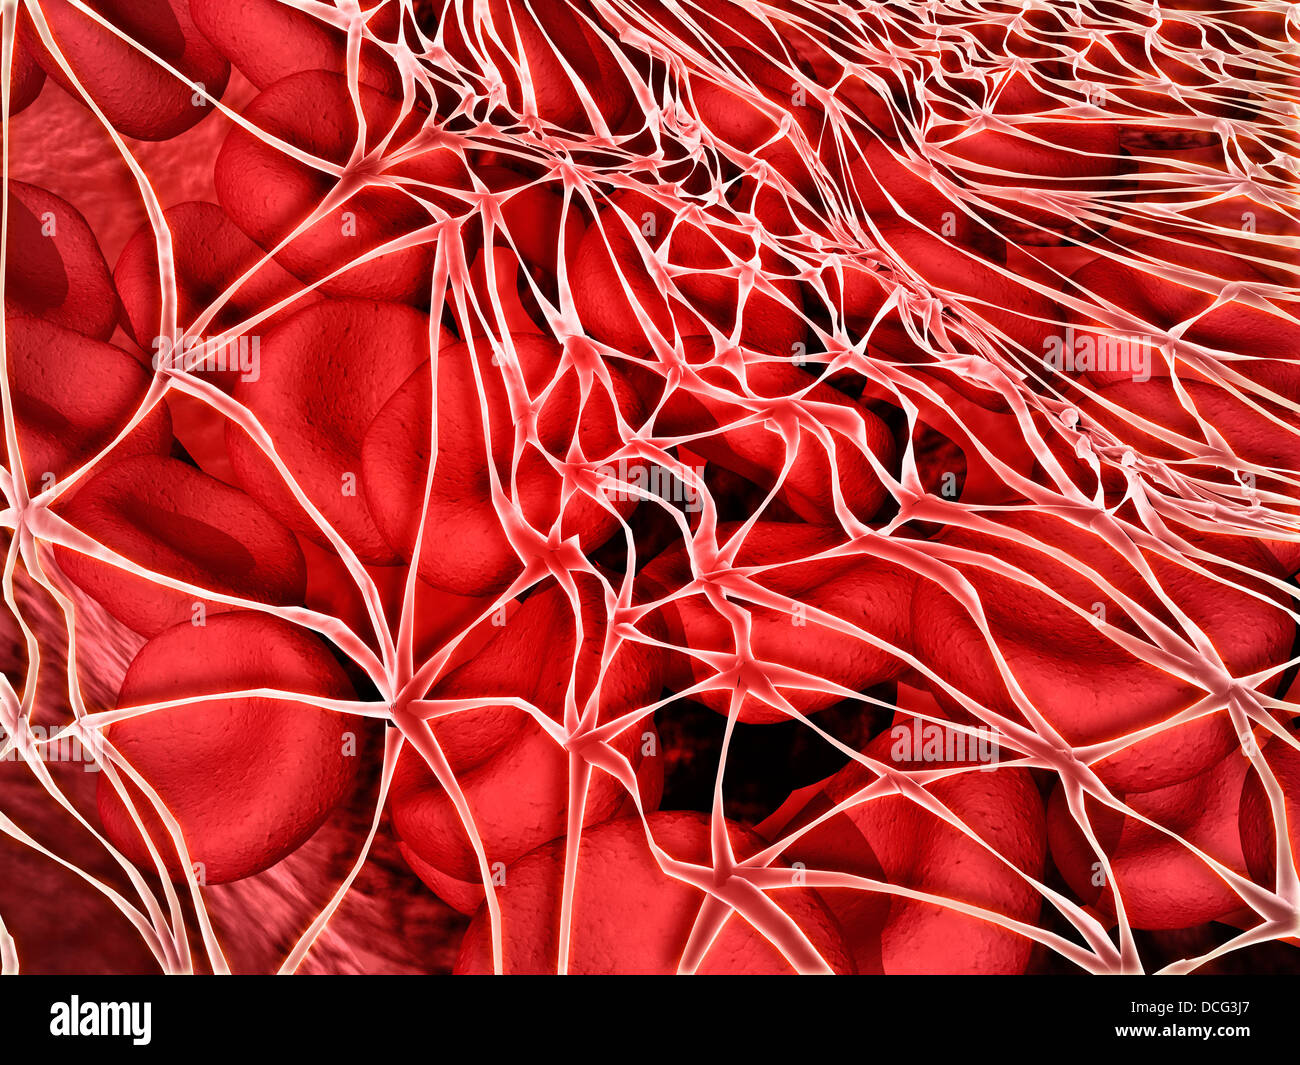 Immagine concettuale di cellule rosse del sangue con fibrina. Foto Stock